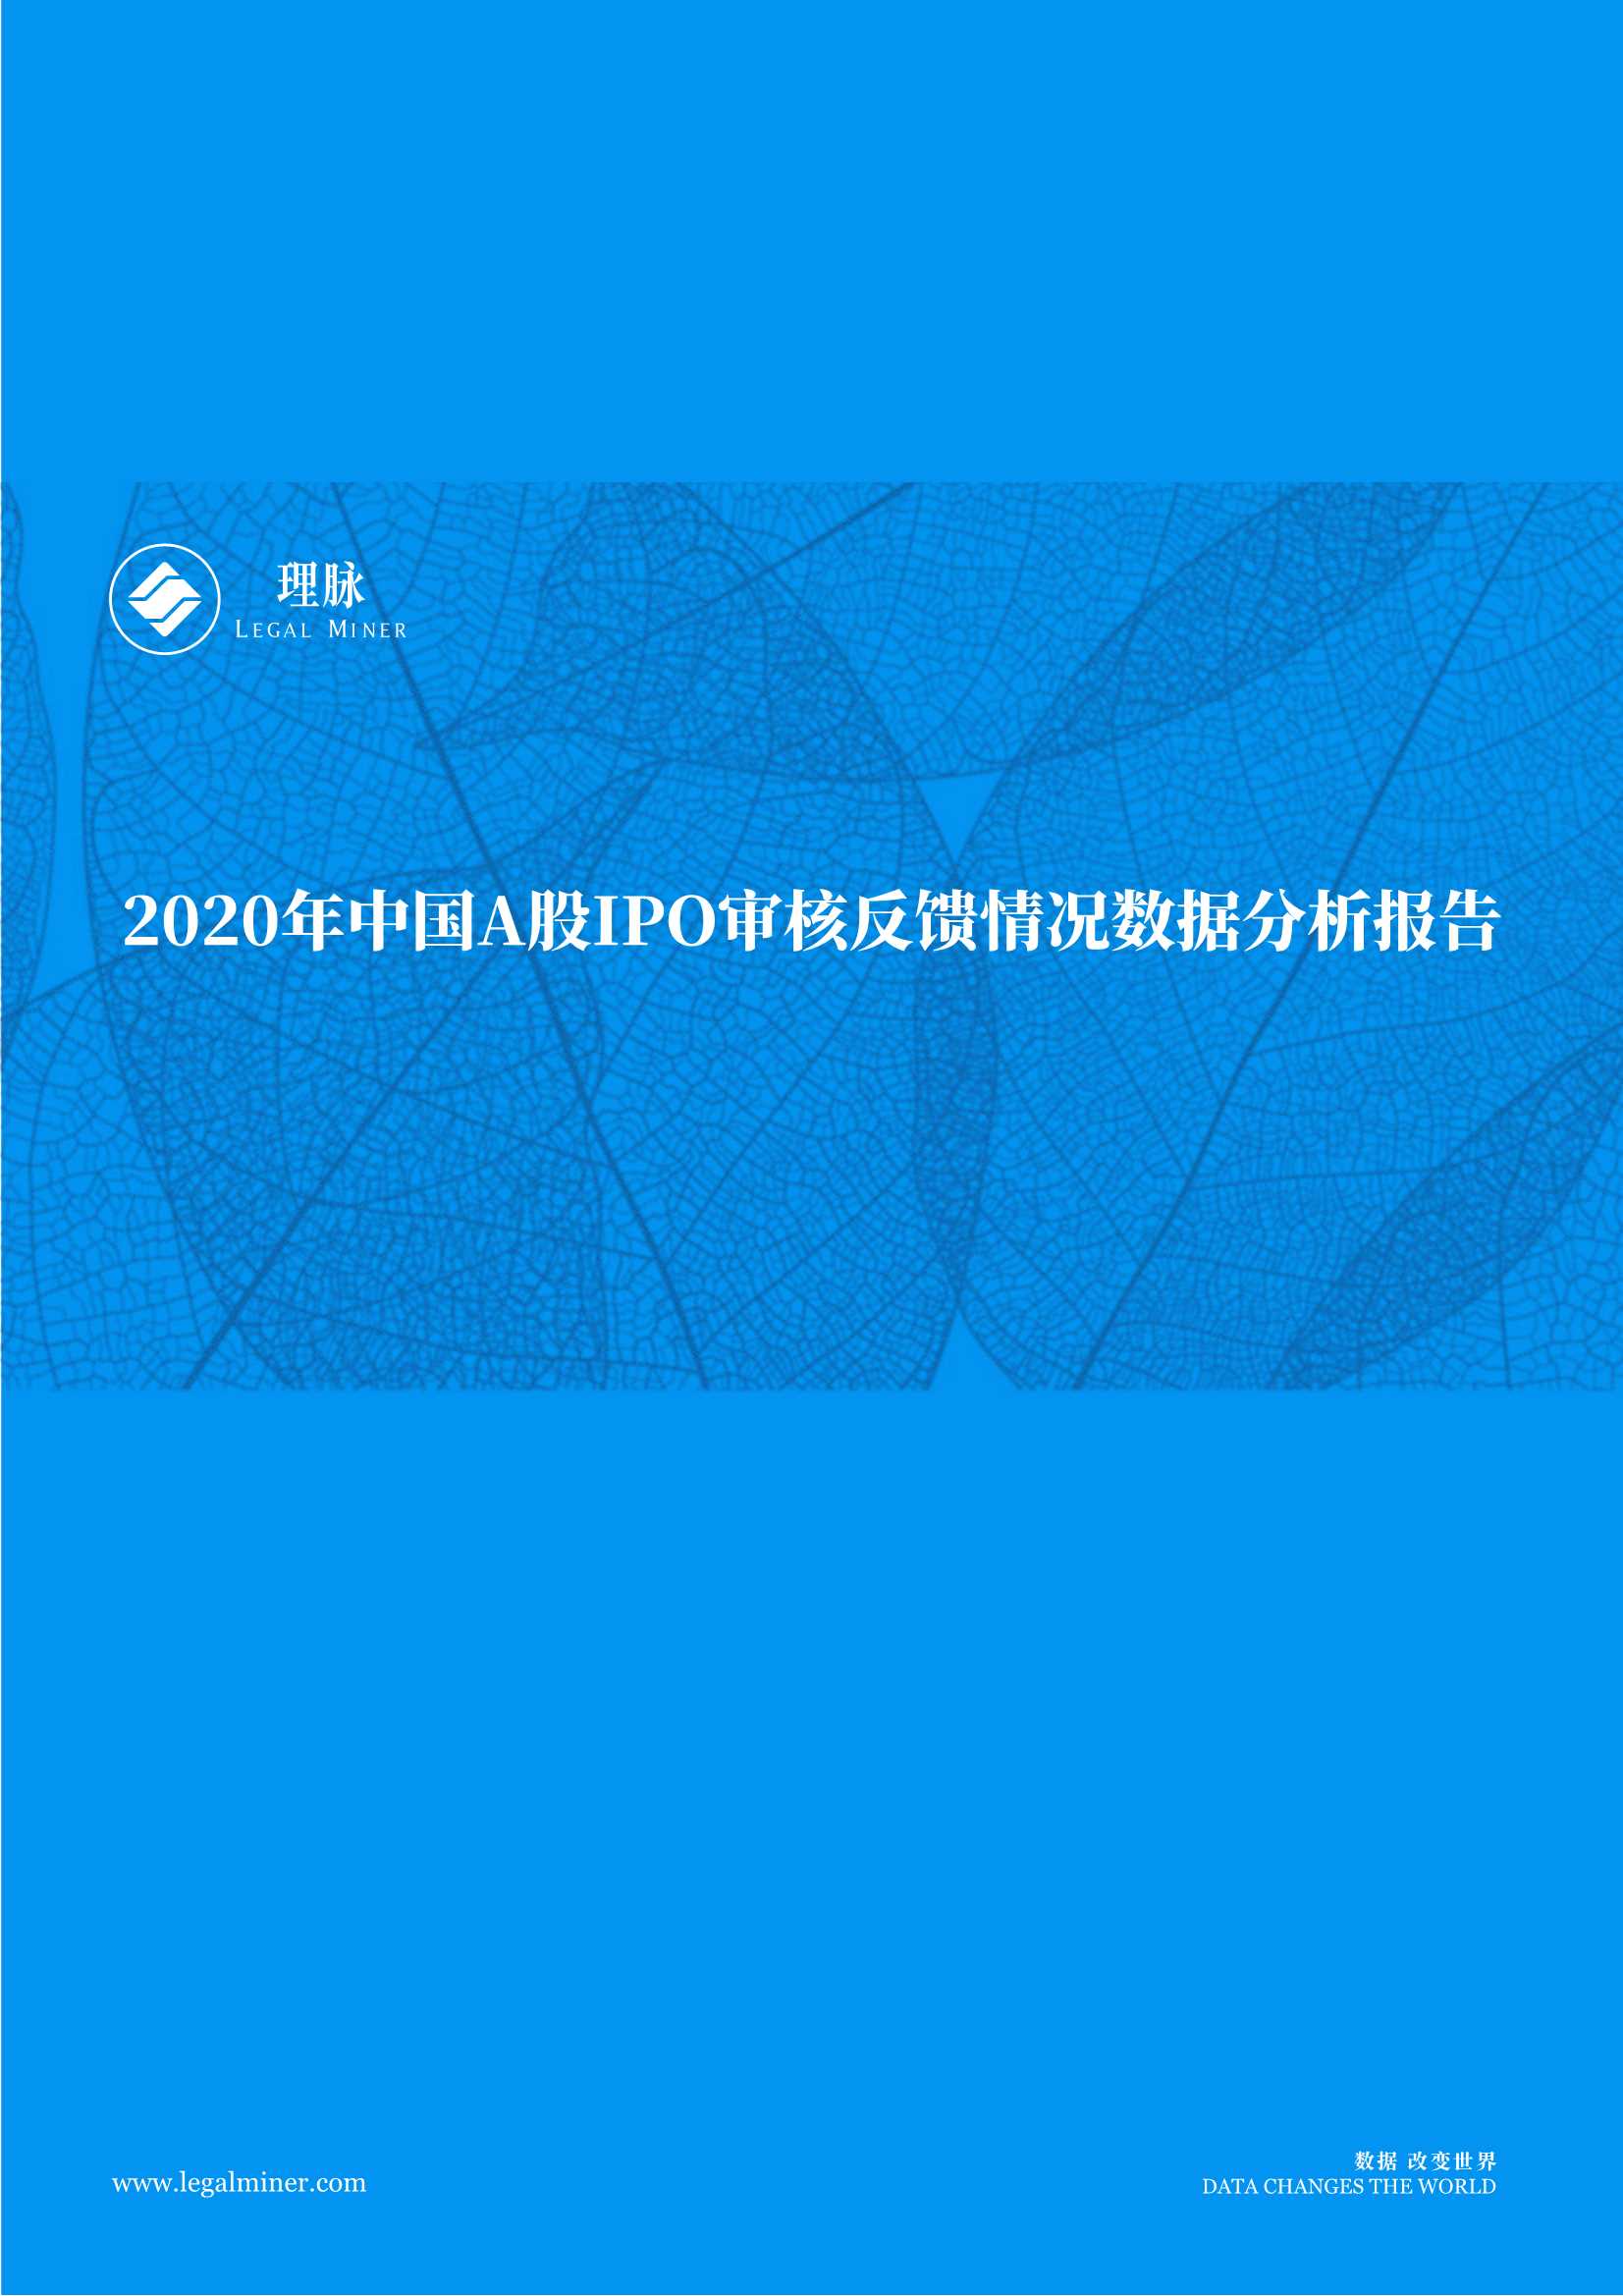 理脉-2020年IPO审核反馈情况数据分析报告-2021.06-13页